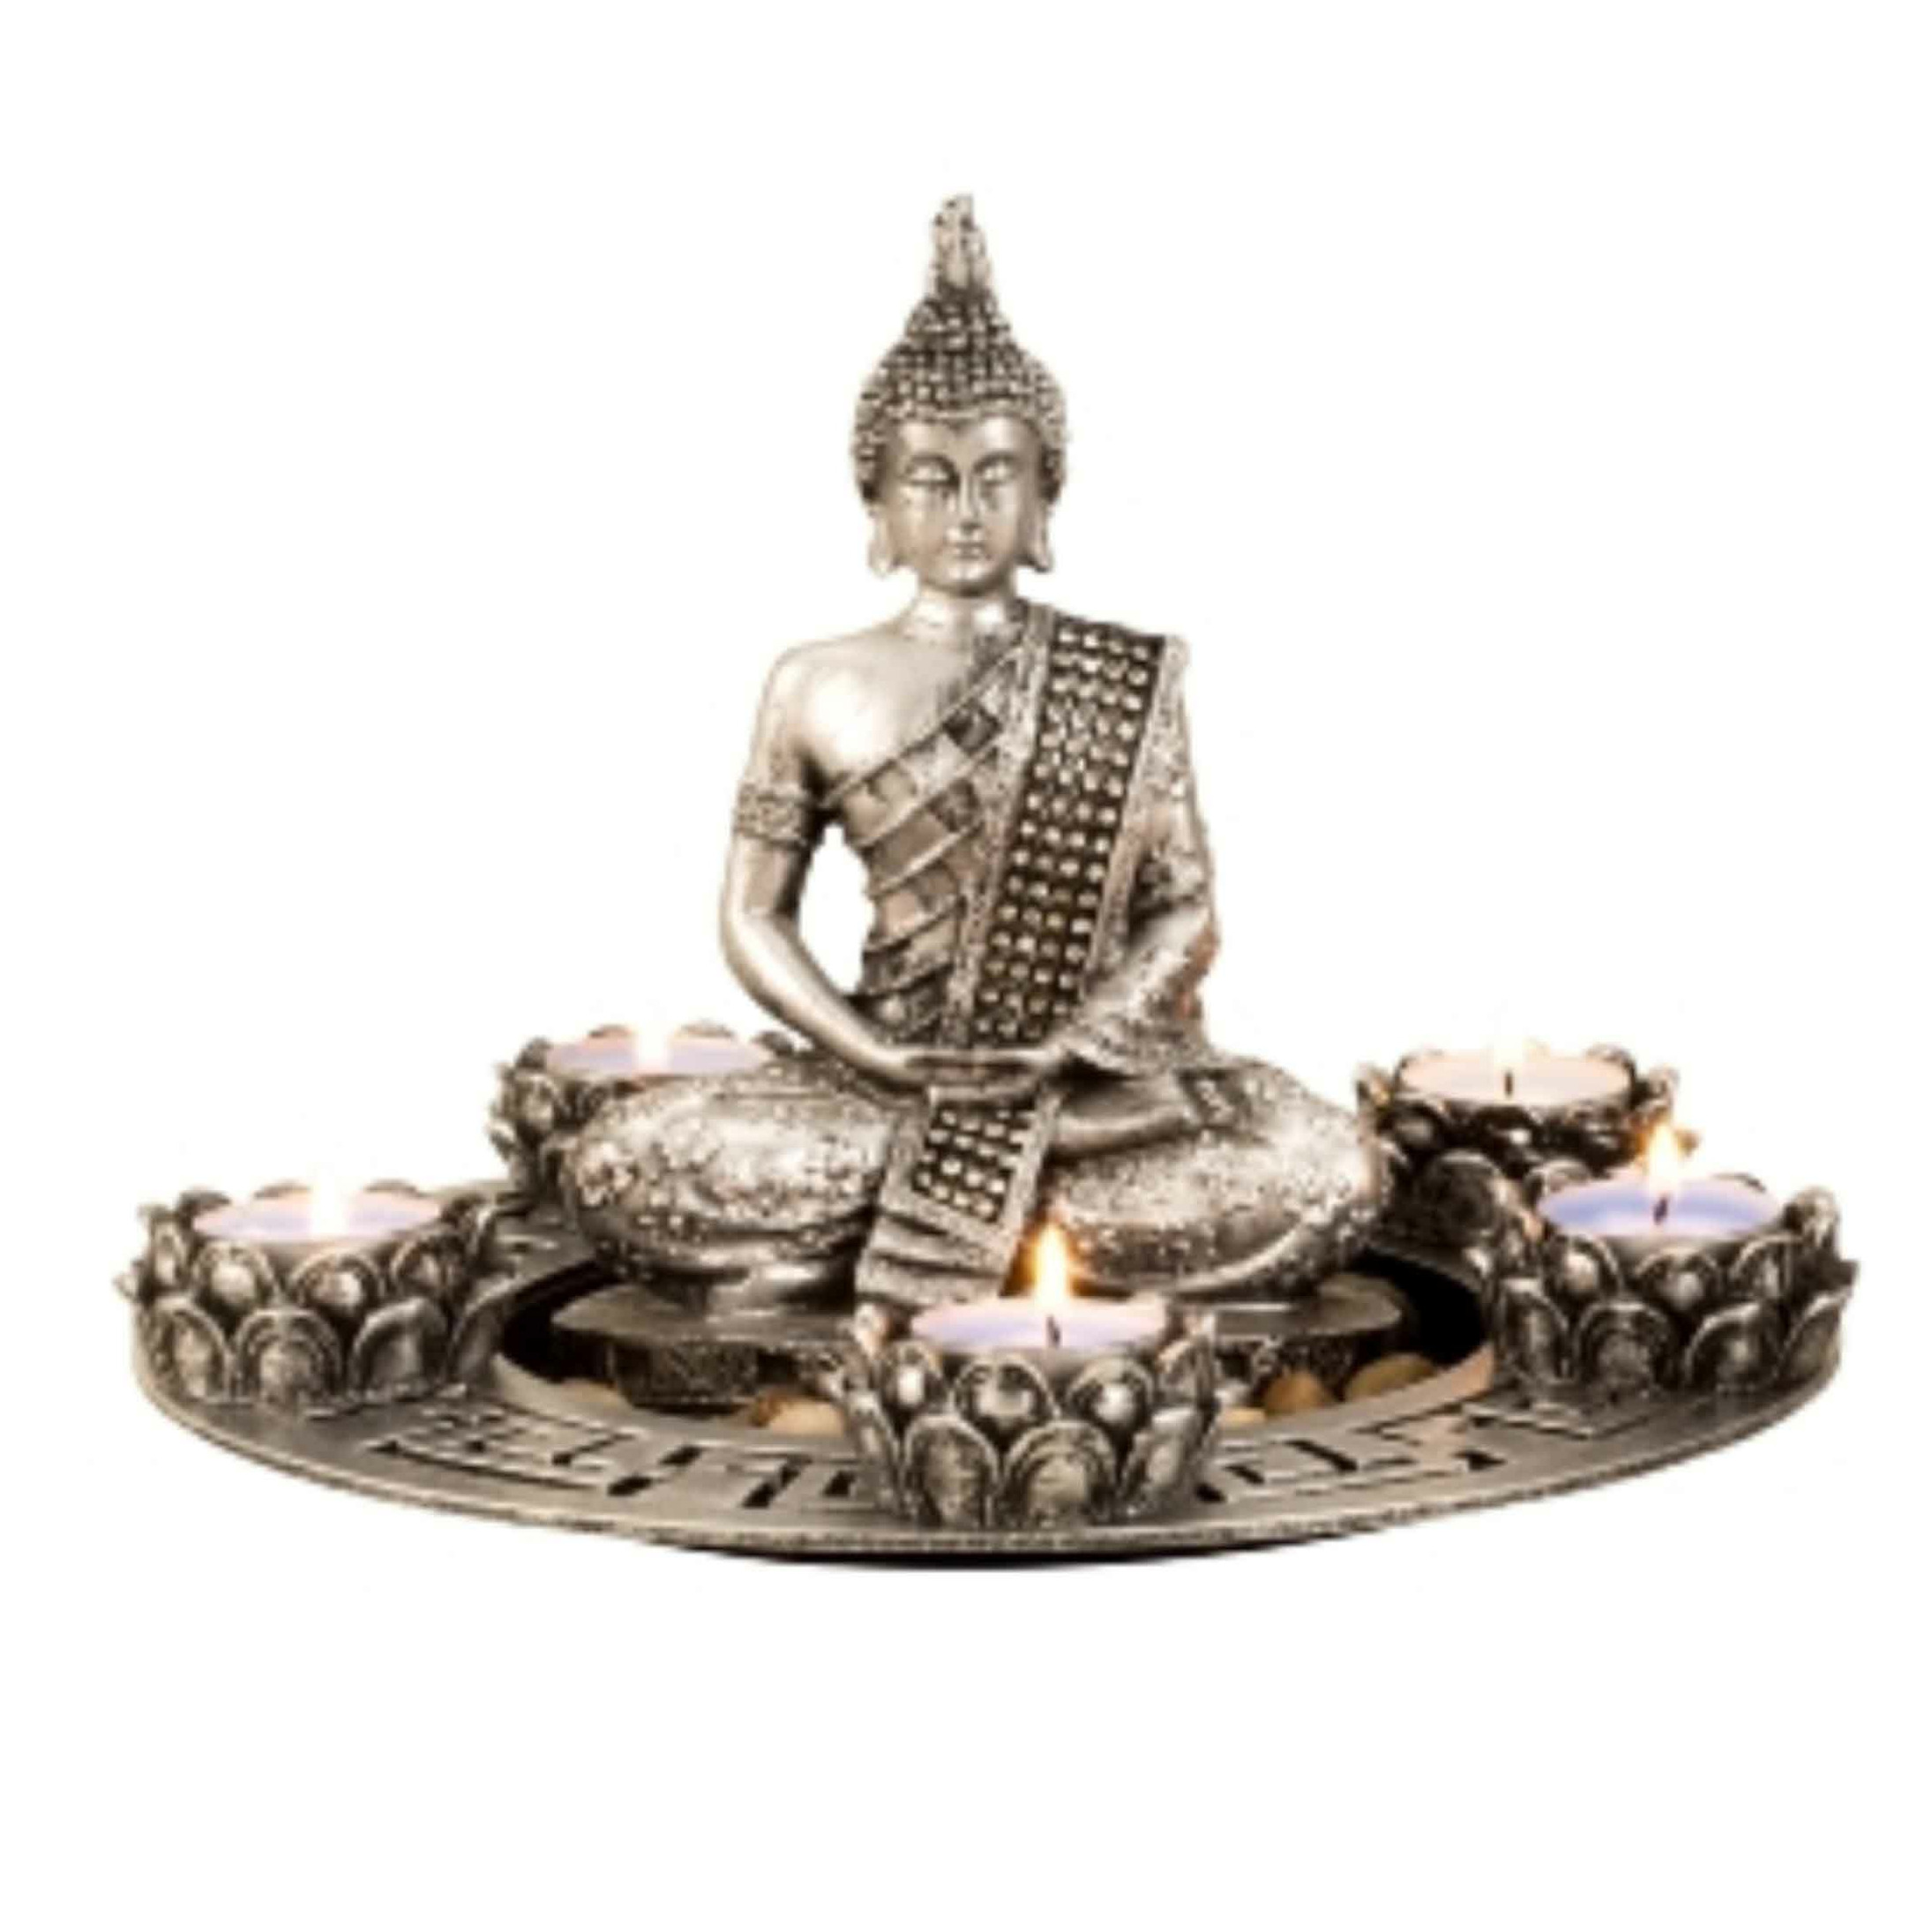 Boeddha beeldje met 5 kaarshouders op schaal - kunststeen - zilver - 27 x 20 cm - deco artikel -